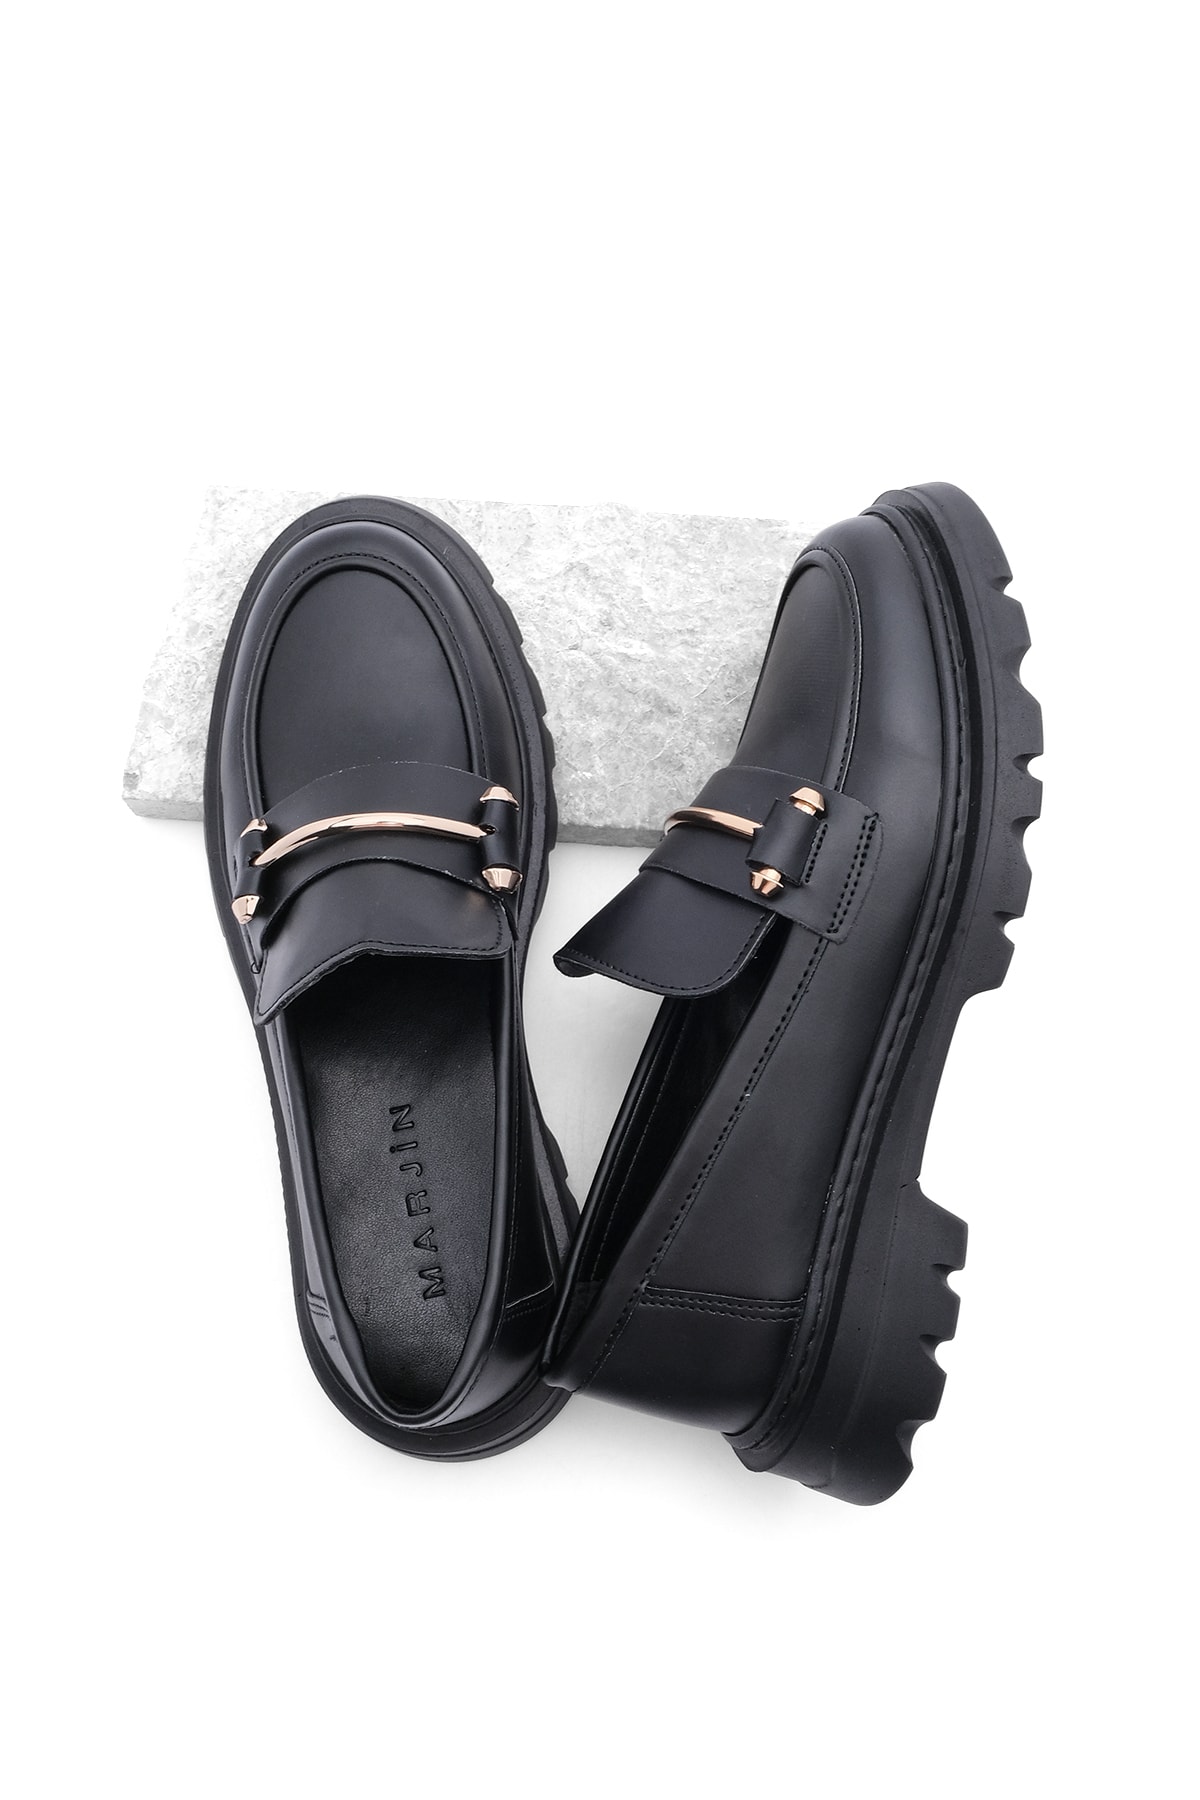 Levně Marjin Women's Loafers Thick Sole Chain Casual Shoes Zolez Black